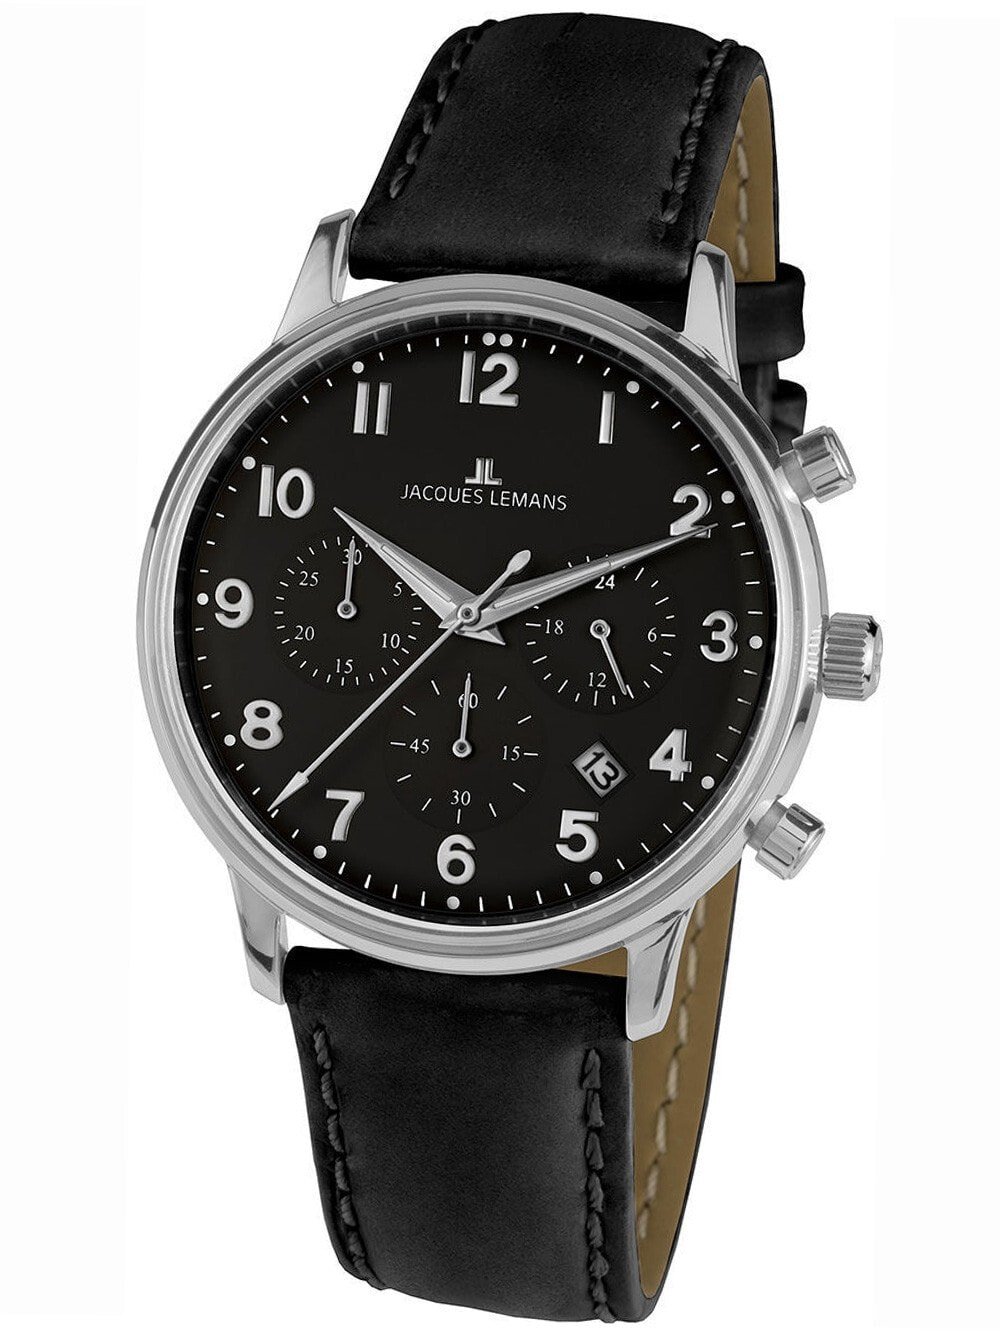 Мужские наручные часы с черным кожаным ремешком Jacques Lemans N-209ZI Retro Classic Chronograph Unisex 40mm 5ATM